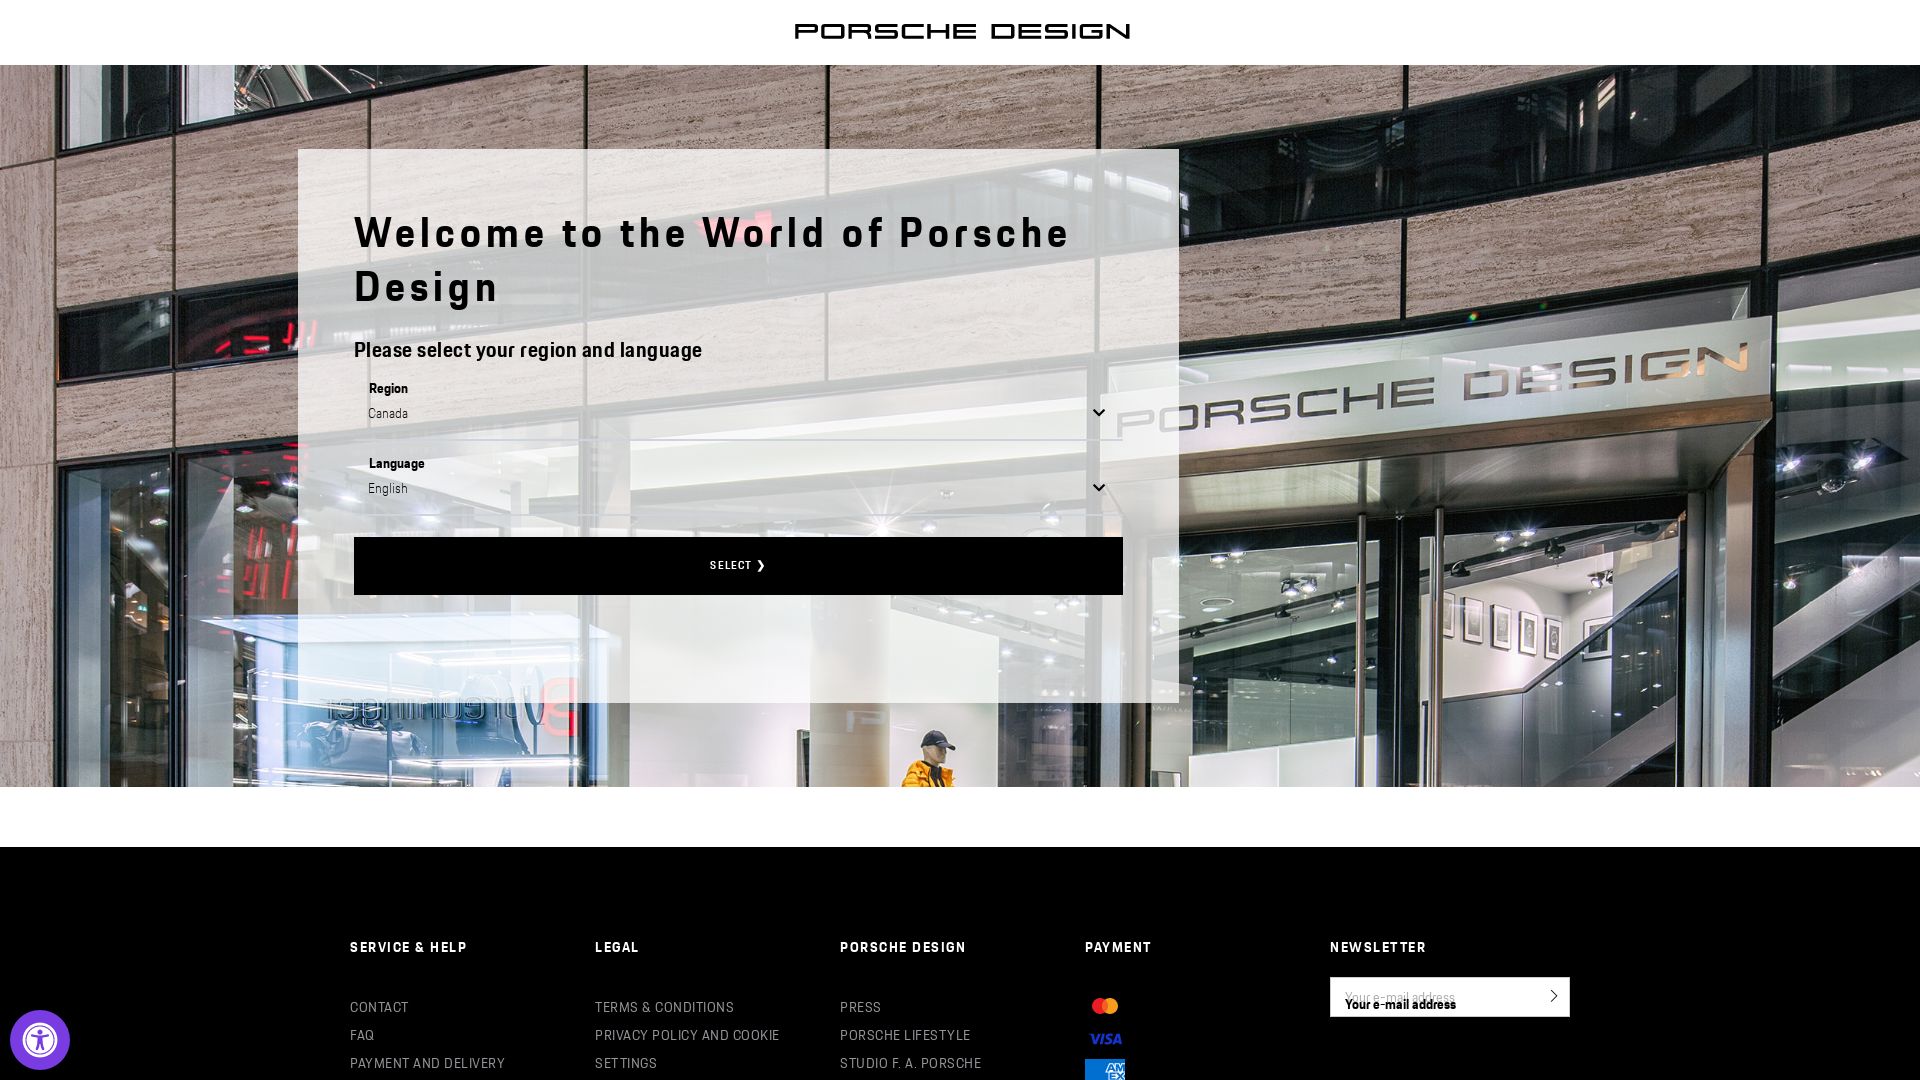 État du site web porsche-design.com est   EN LIGNE